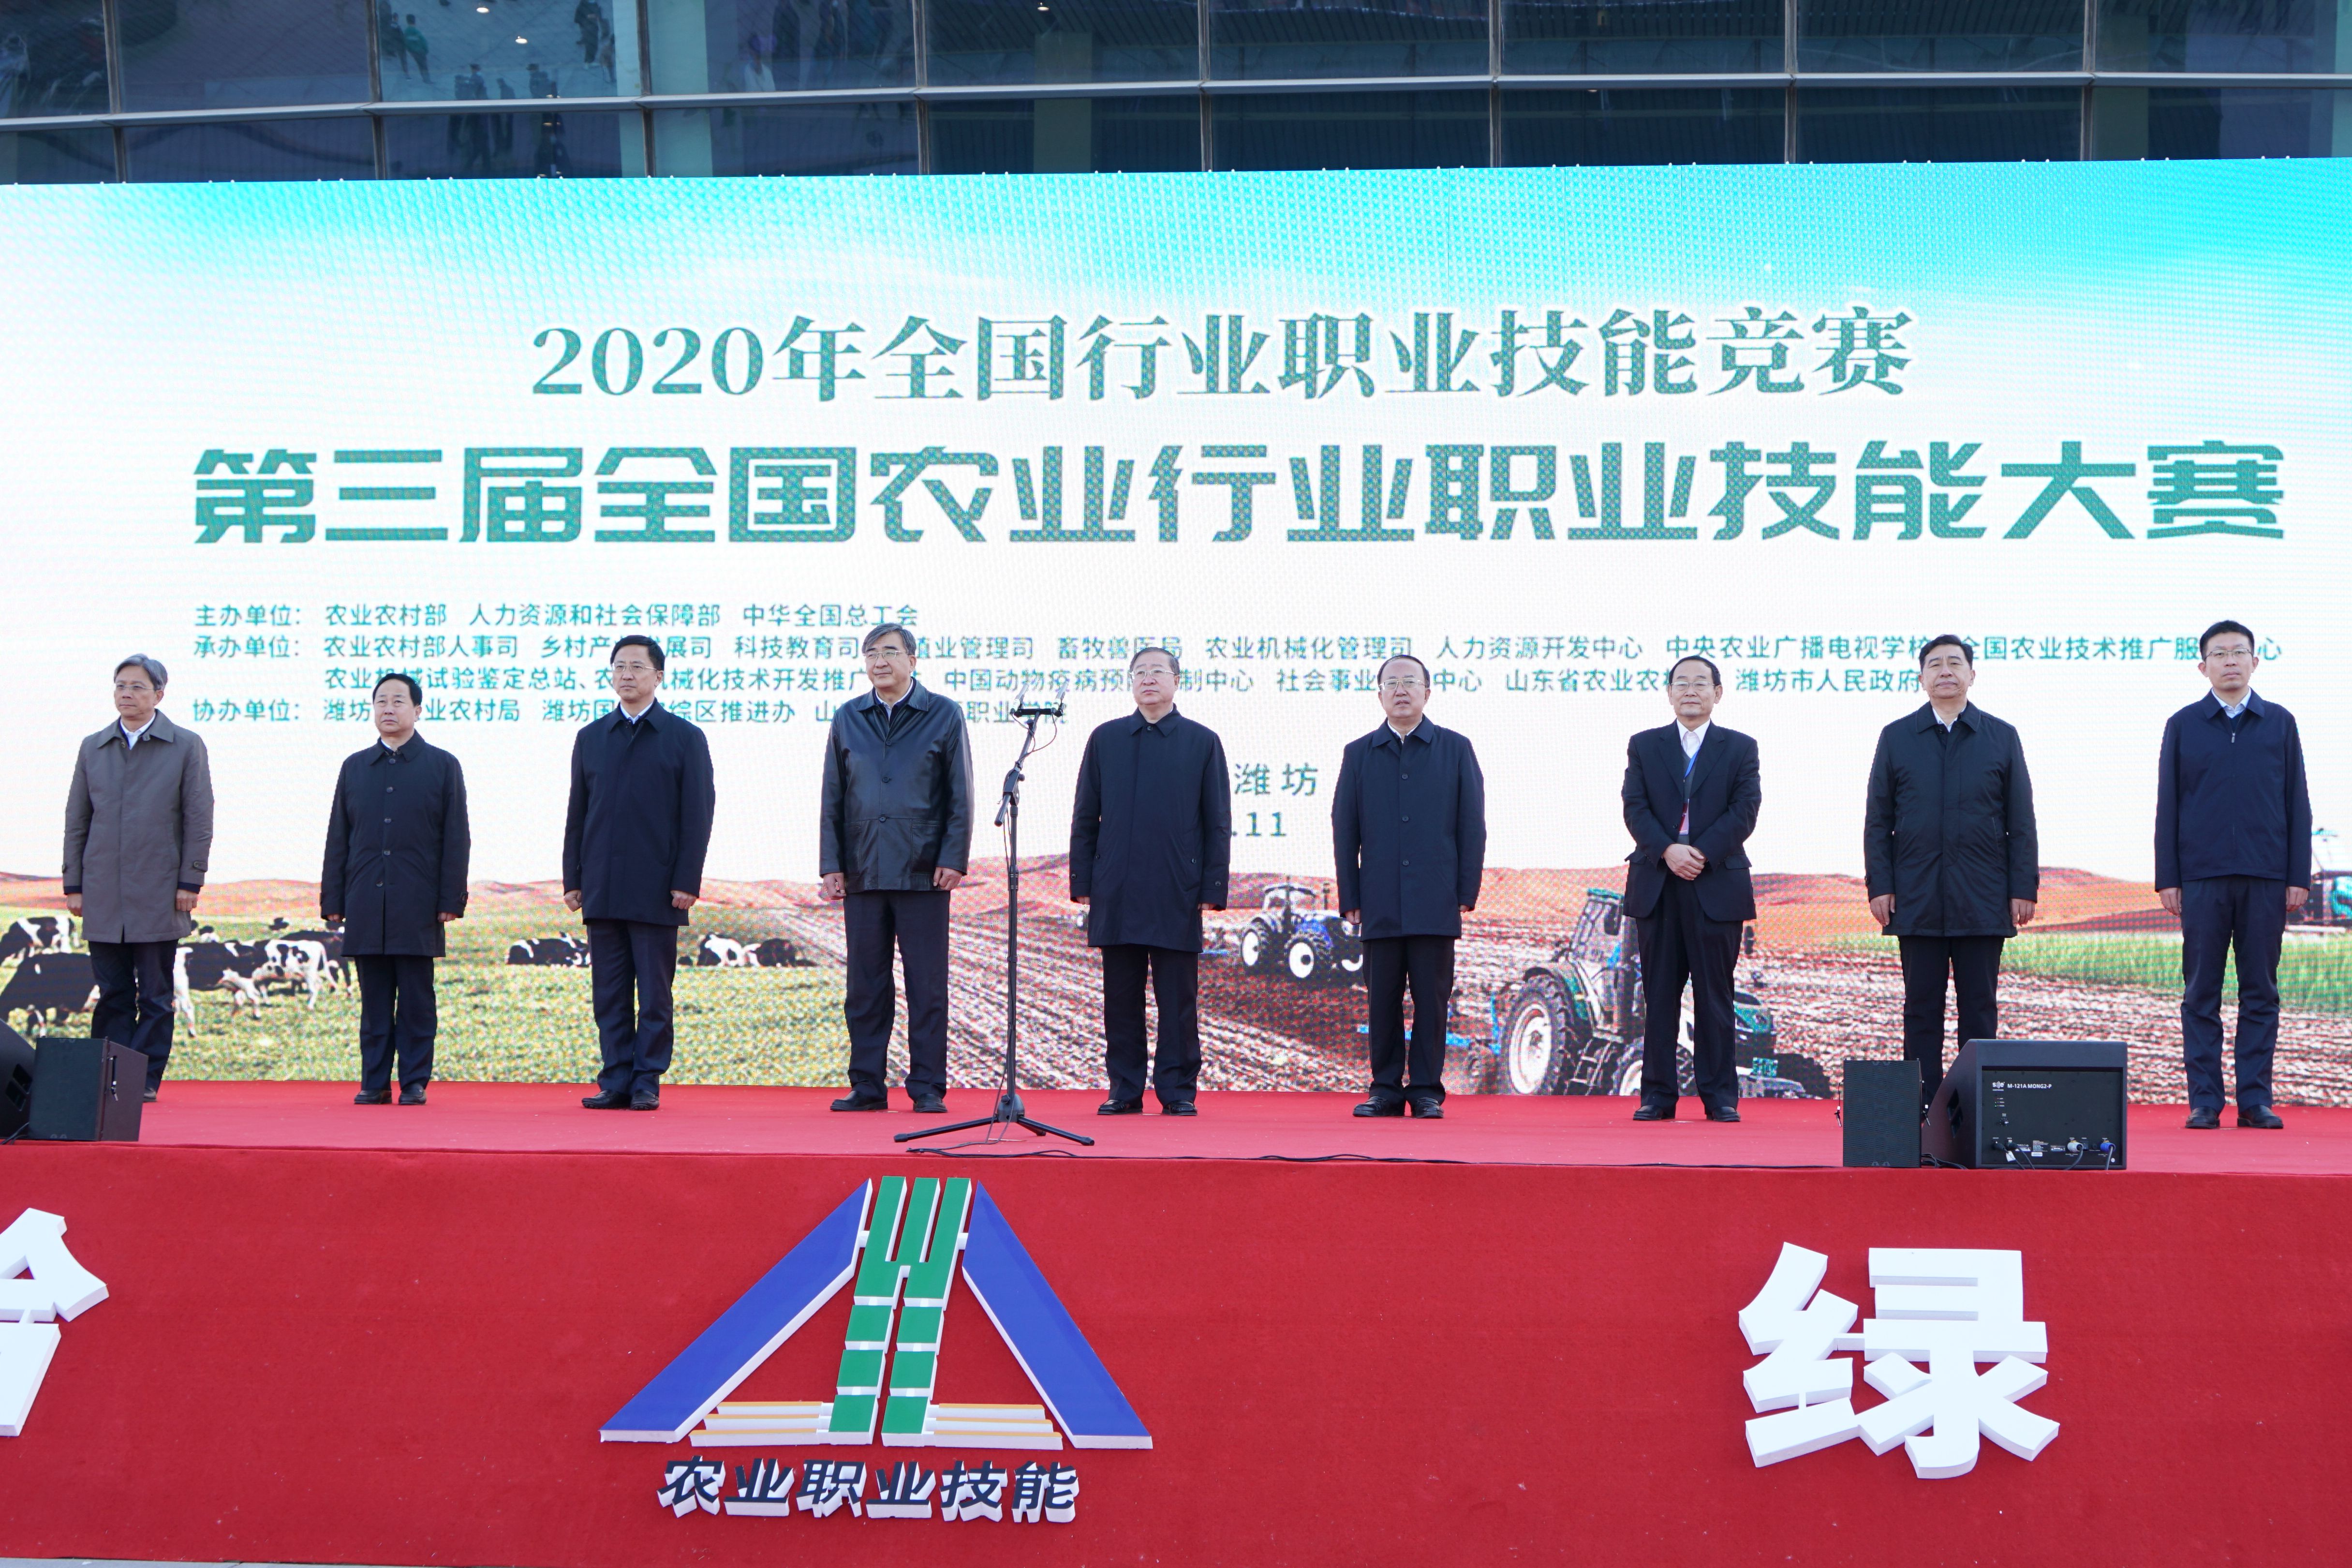 第三届全国农业行业职业技能大赛在山东潍坊举行